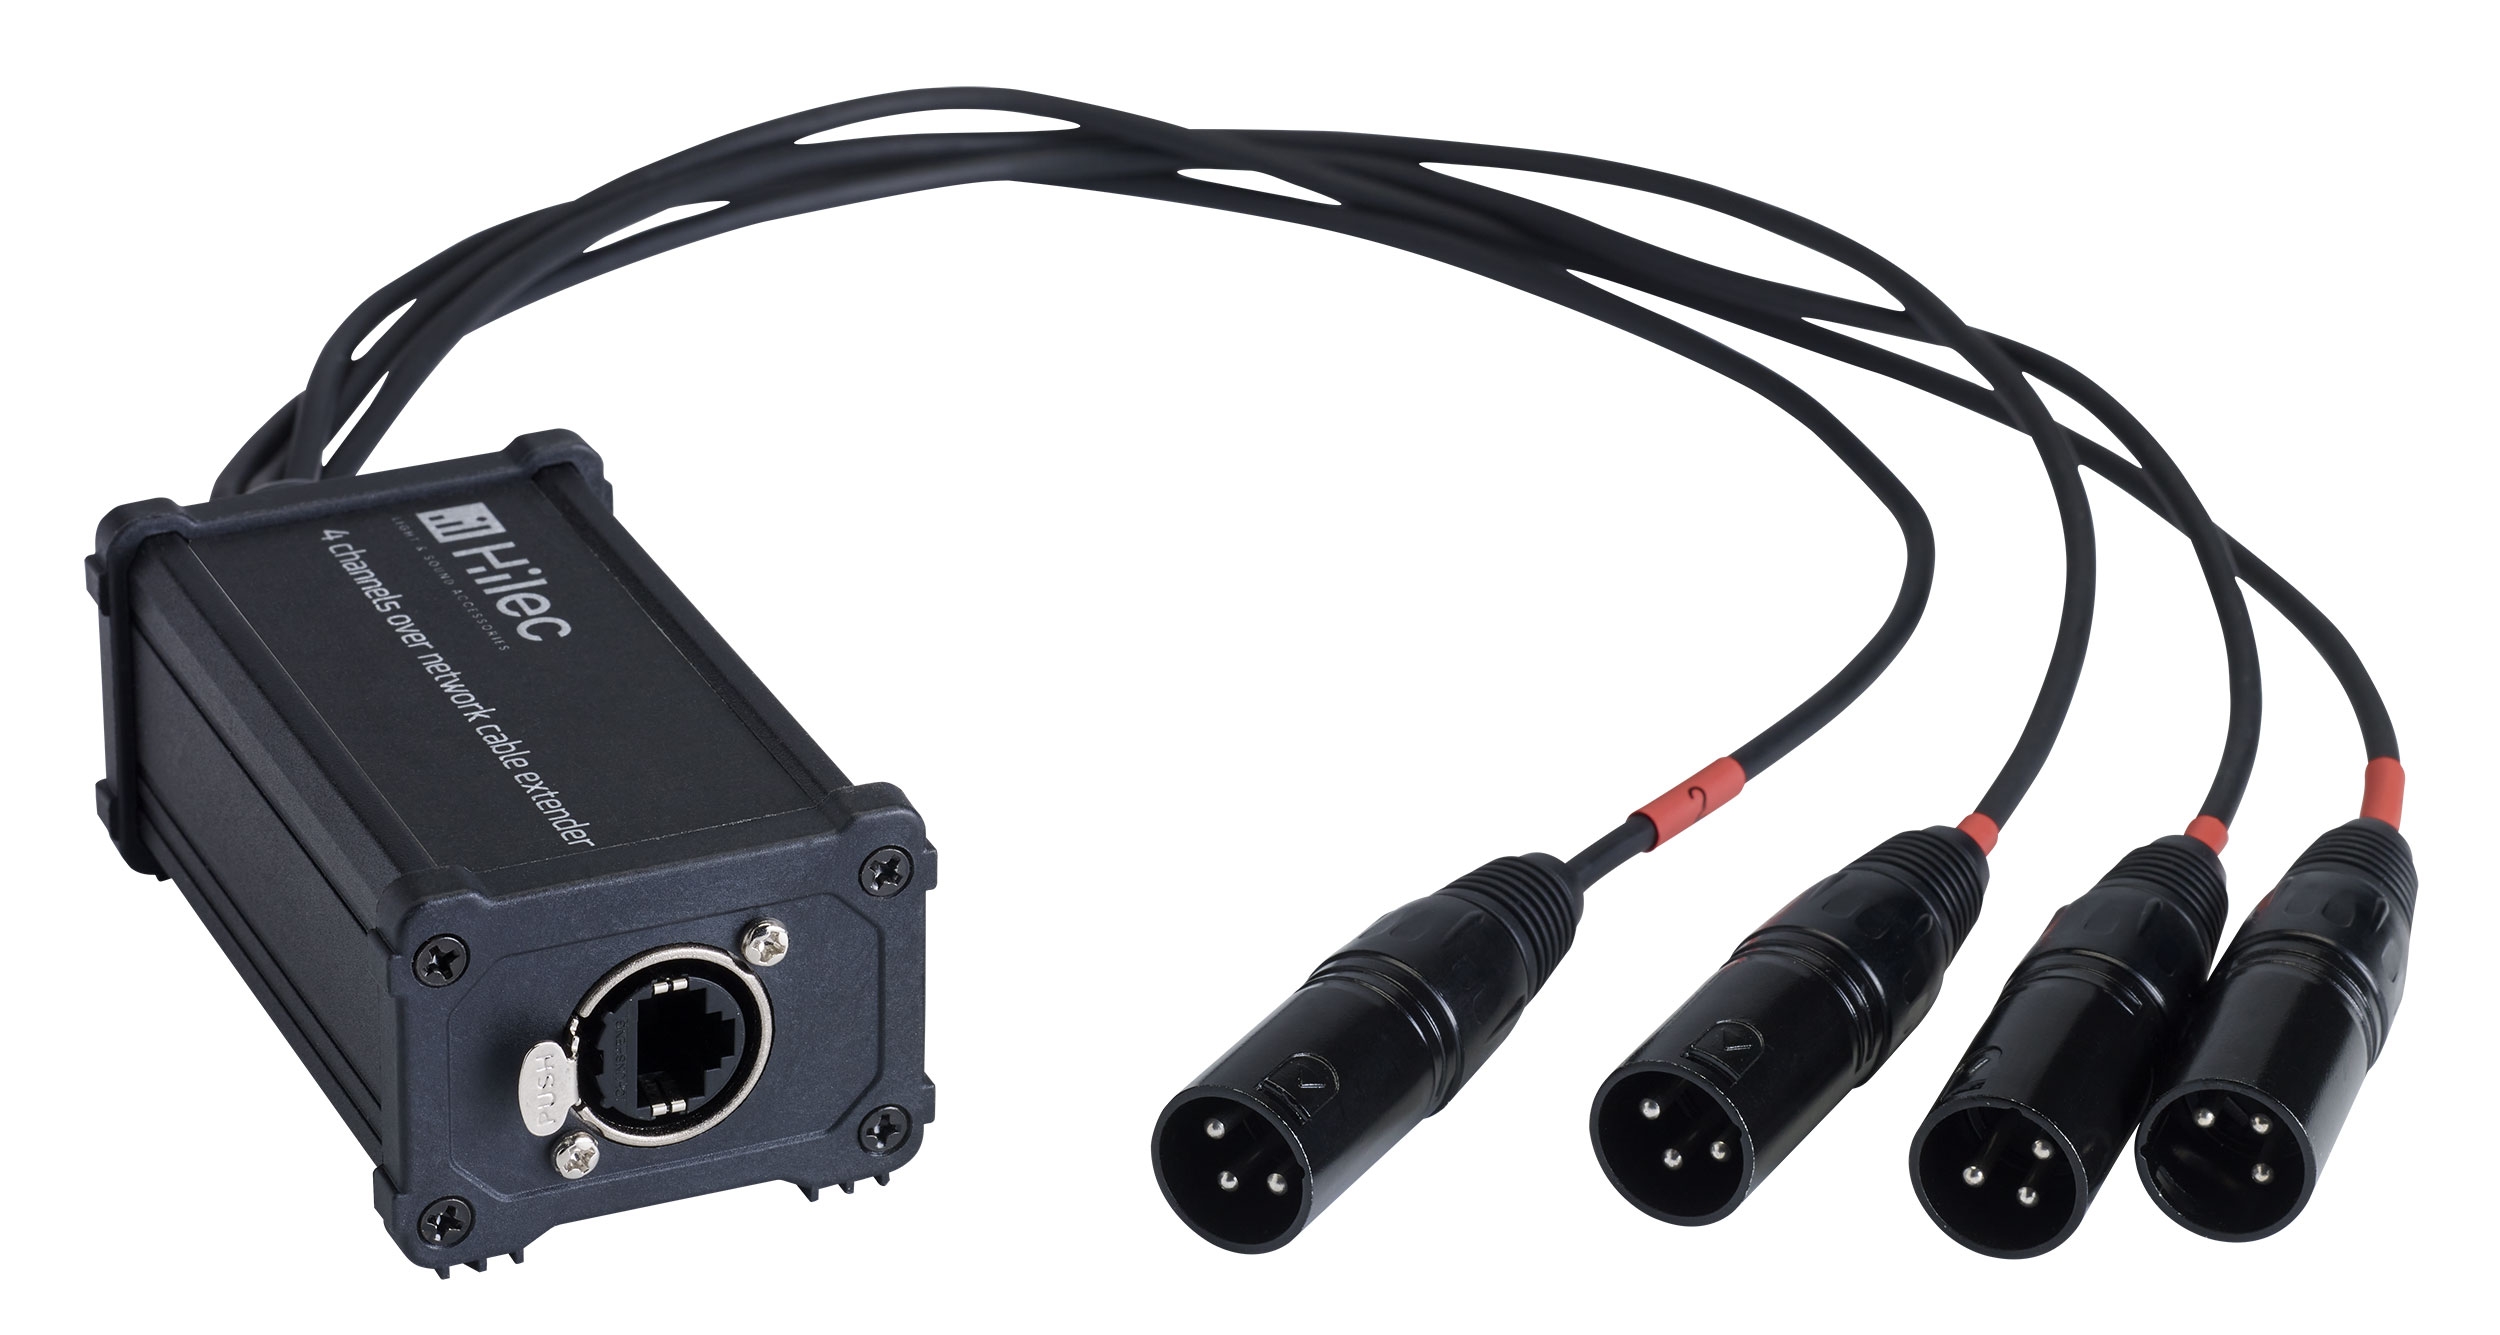 RJ45 / XLR3M adapterdoos voor audio of DMX signaal